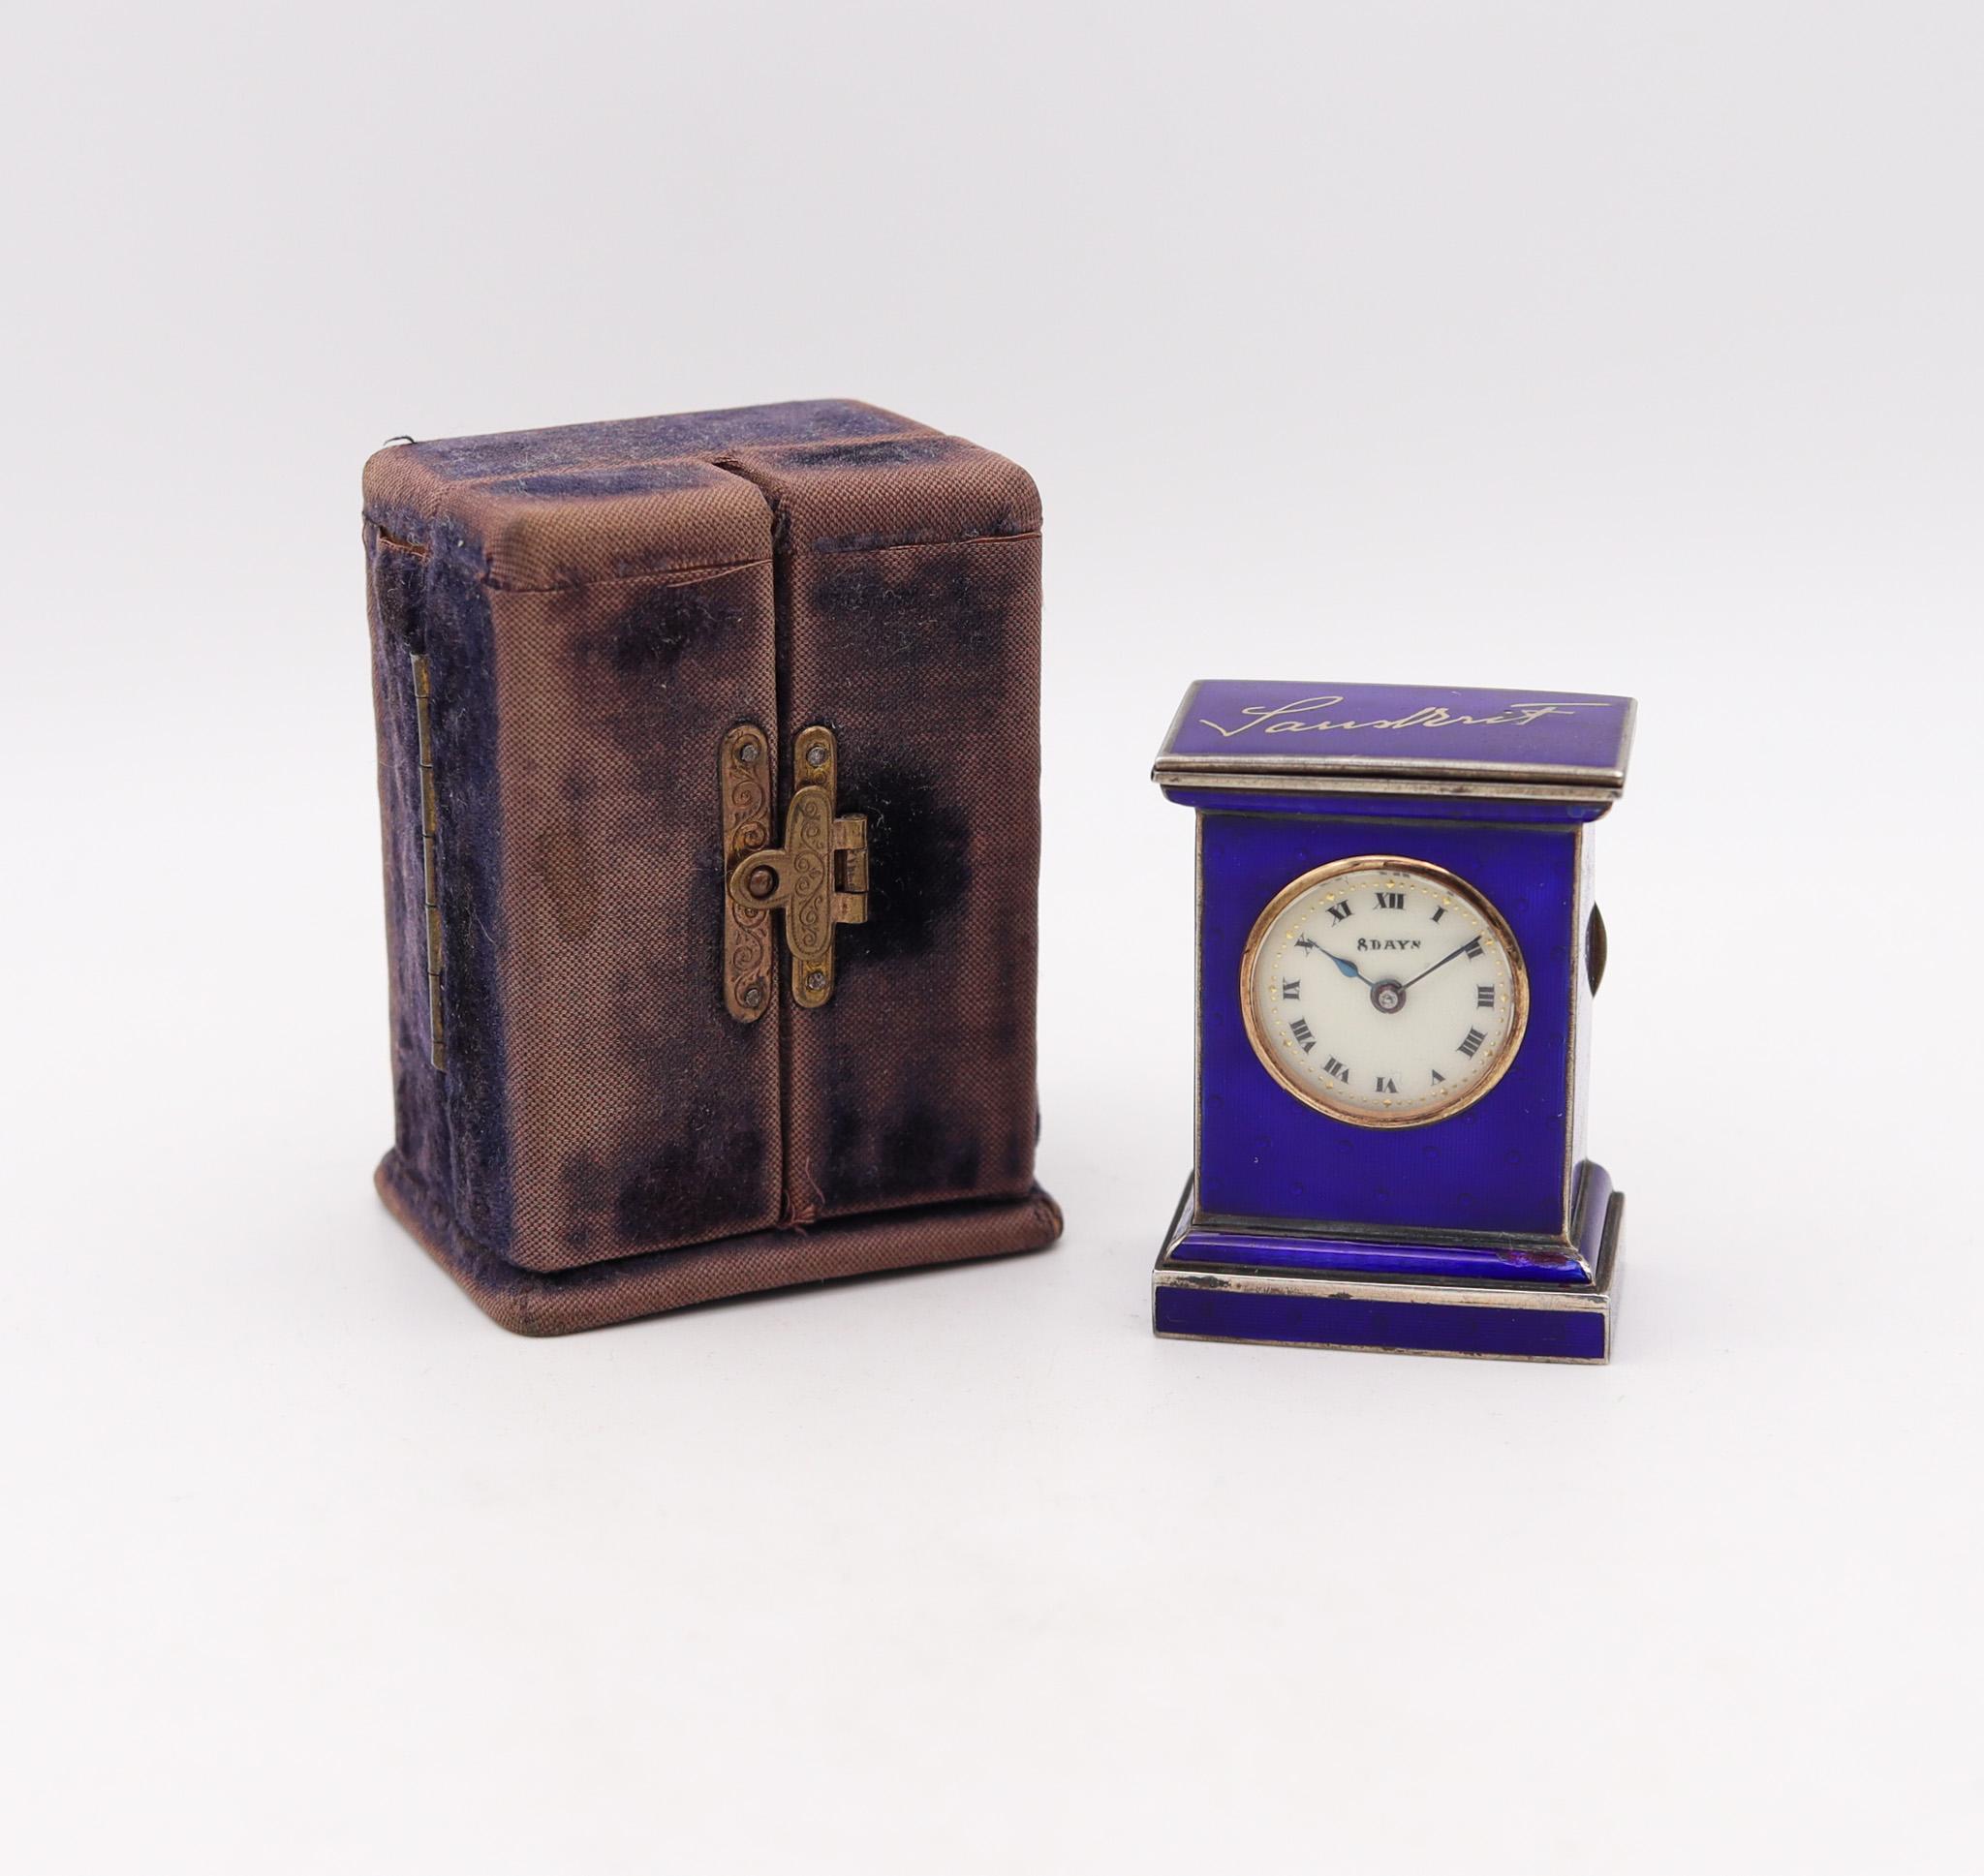 Eine Miniatur-Reiseuhr, entworfen von Valmé.

Wunderschöne Miniatur-Reisekutschenuhr, hergestellt in Genf in der Schweiz von der Valmé Swiss Co. Diese kleine antike Uhr ist eine Ausnahmeerscheinung, die in der Zeit des Art déco um 1920 entstand. Er